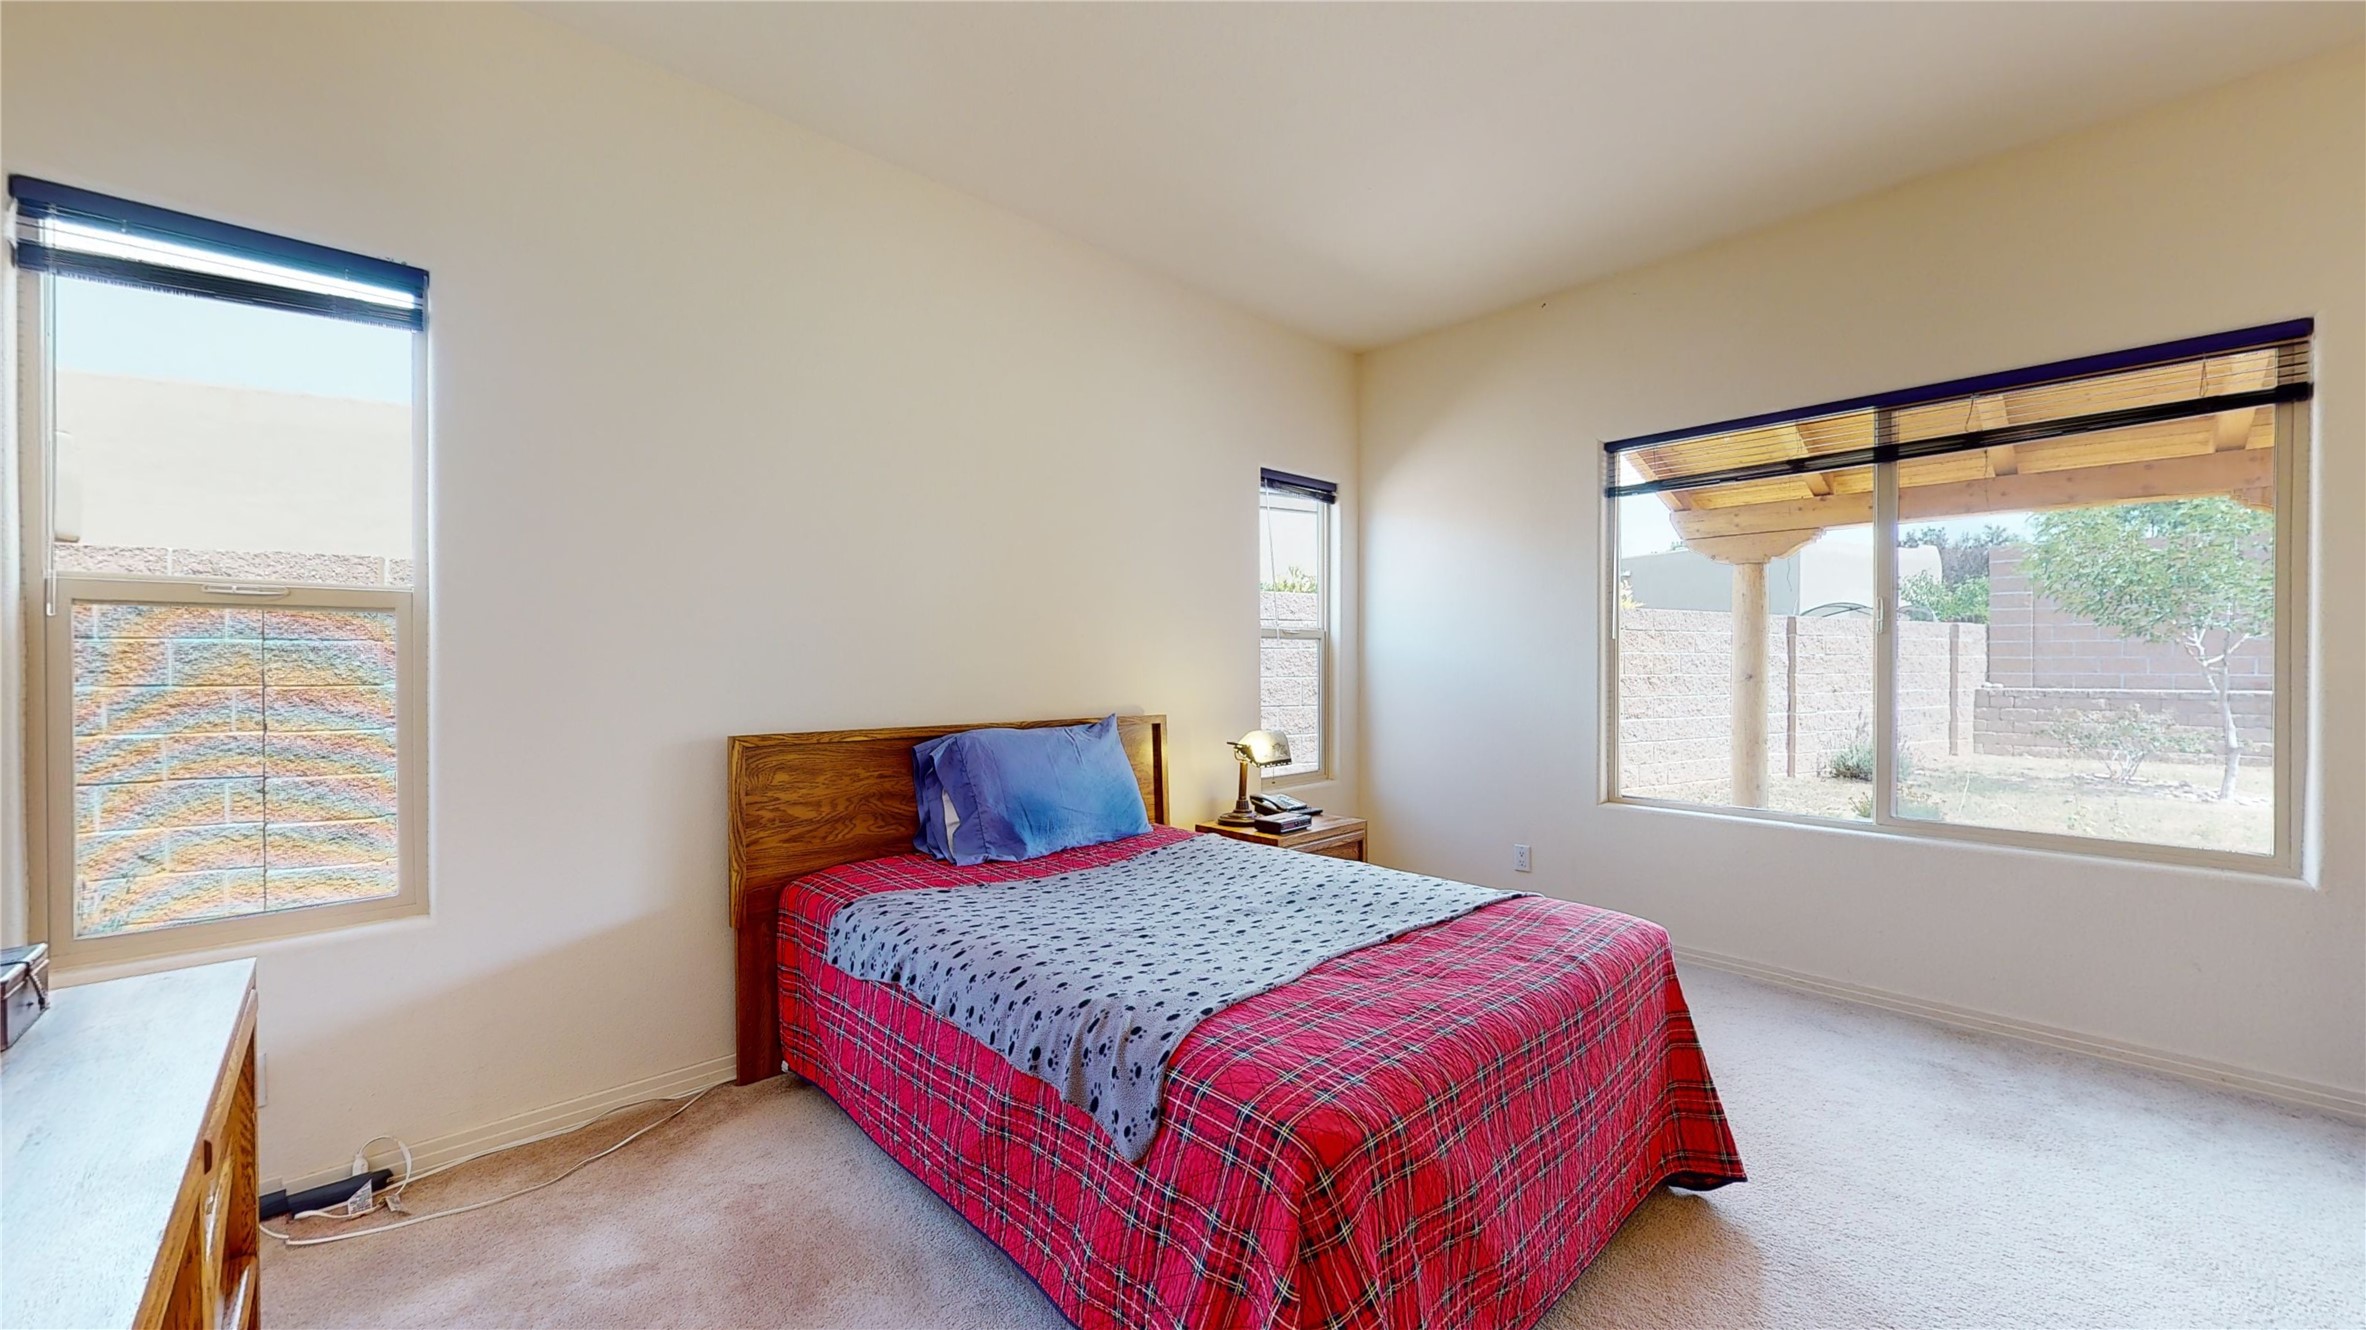 4653 Contenta Ridge, Santa Fe, New Mexico 87507, 3 Bedrooms Bedrooms, ,2 BathroomsBathrooms,Residential,For Sale,4653 Contenta Ridge,202232899